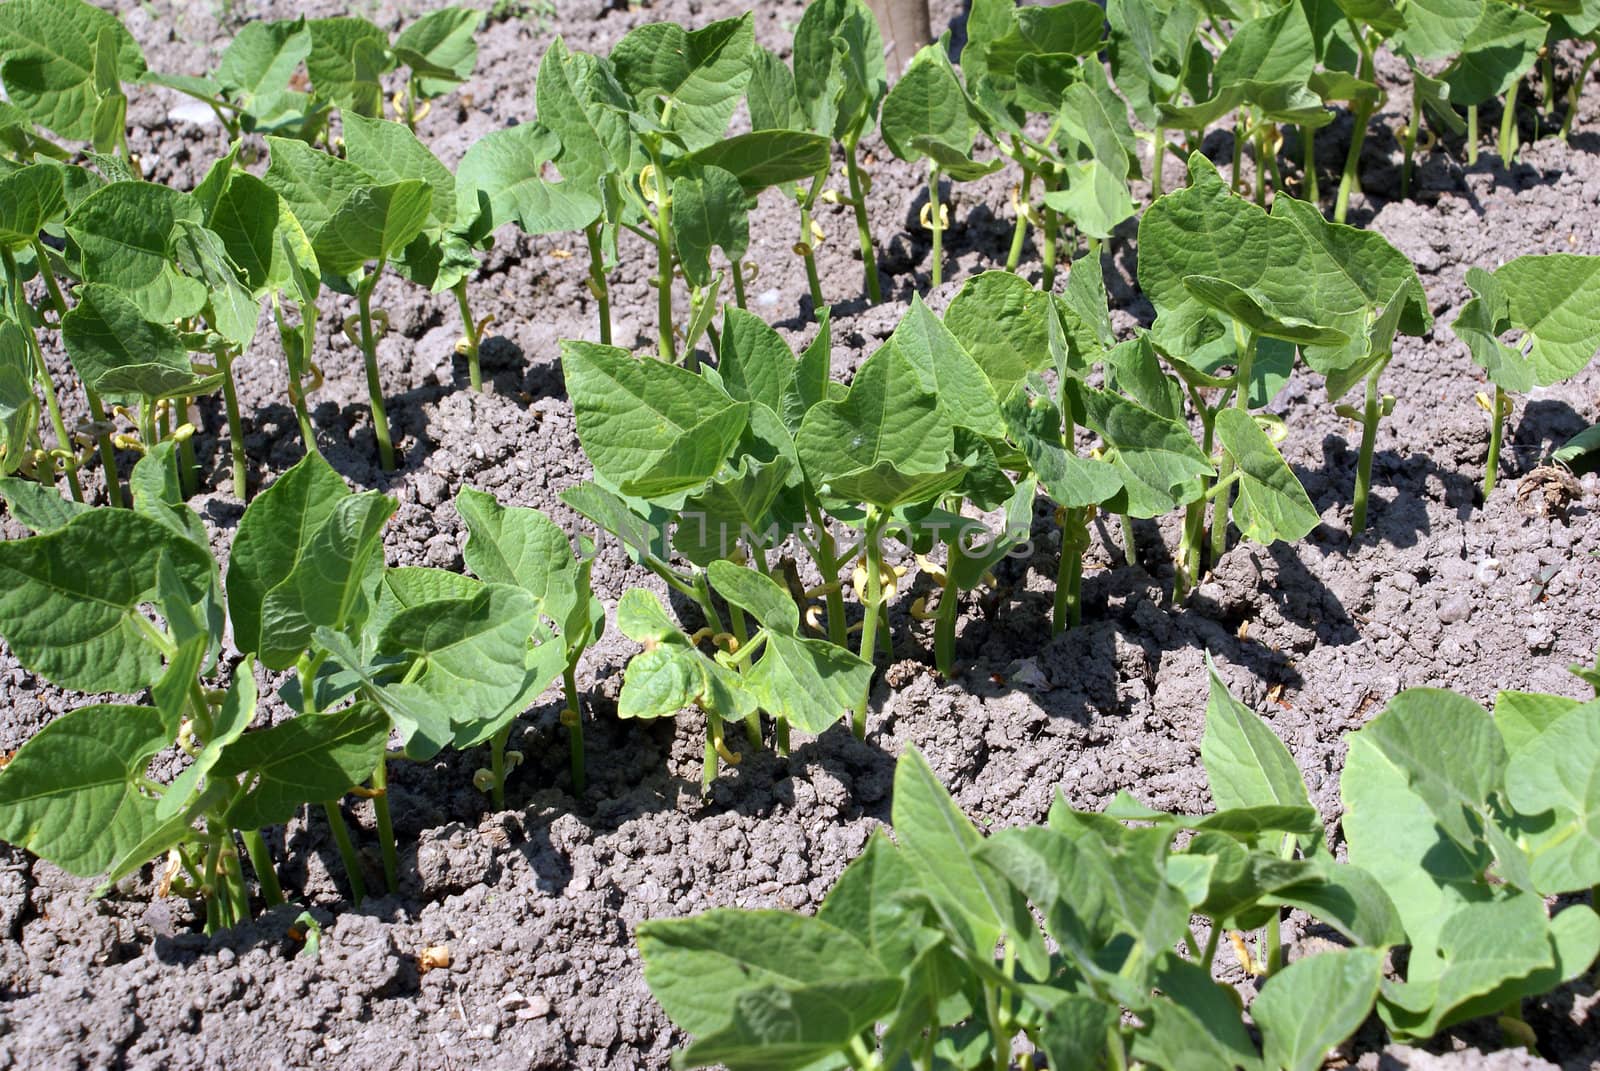 Closeup shot of a green bean plants growing on a field.